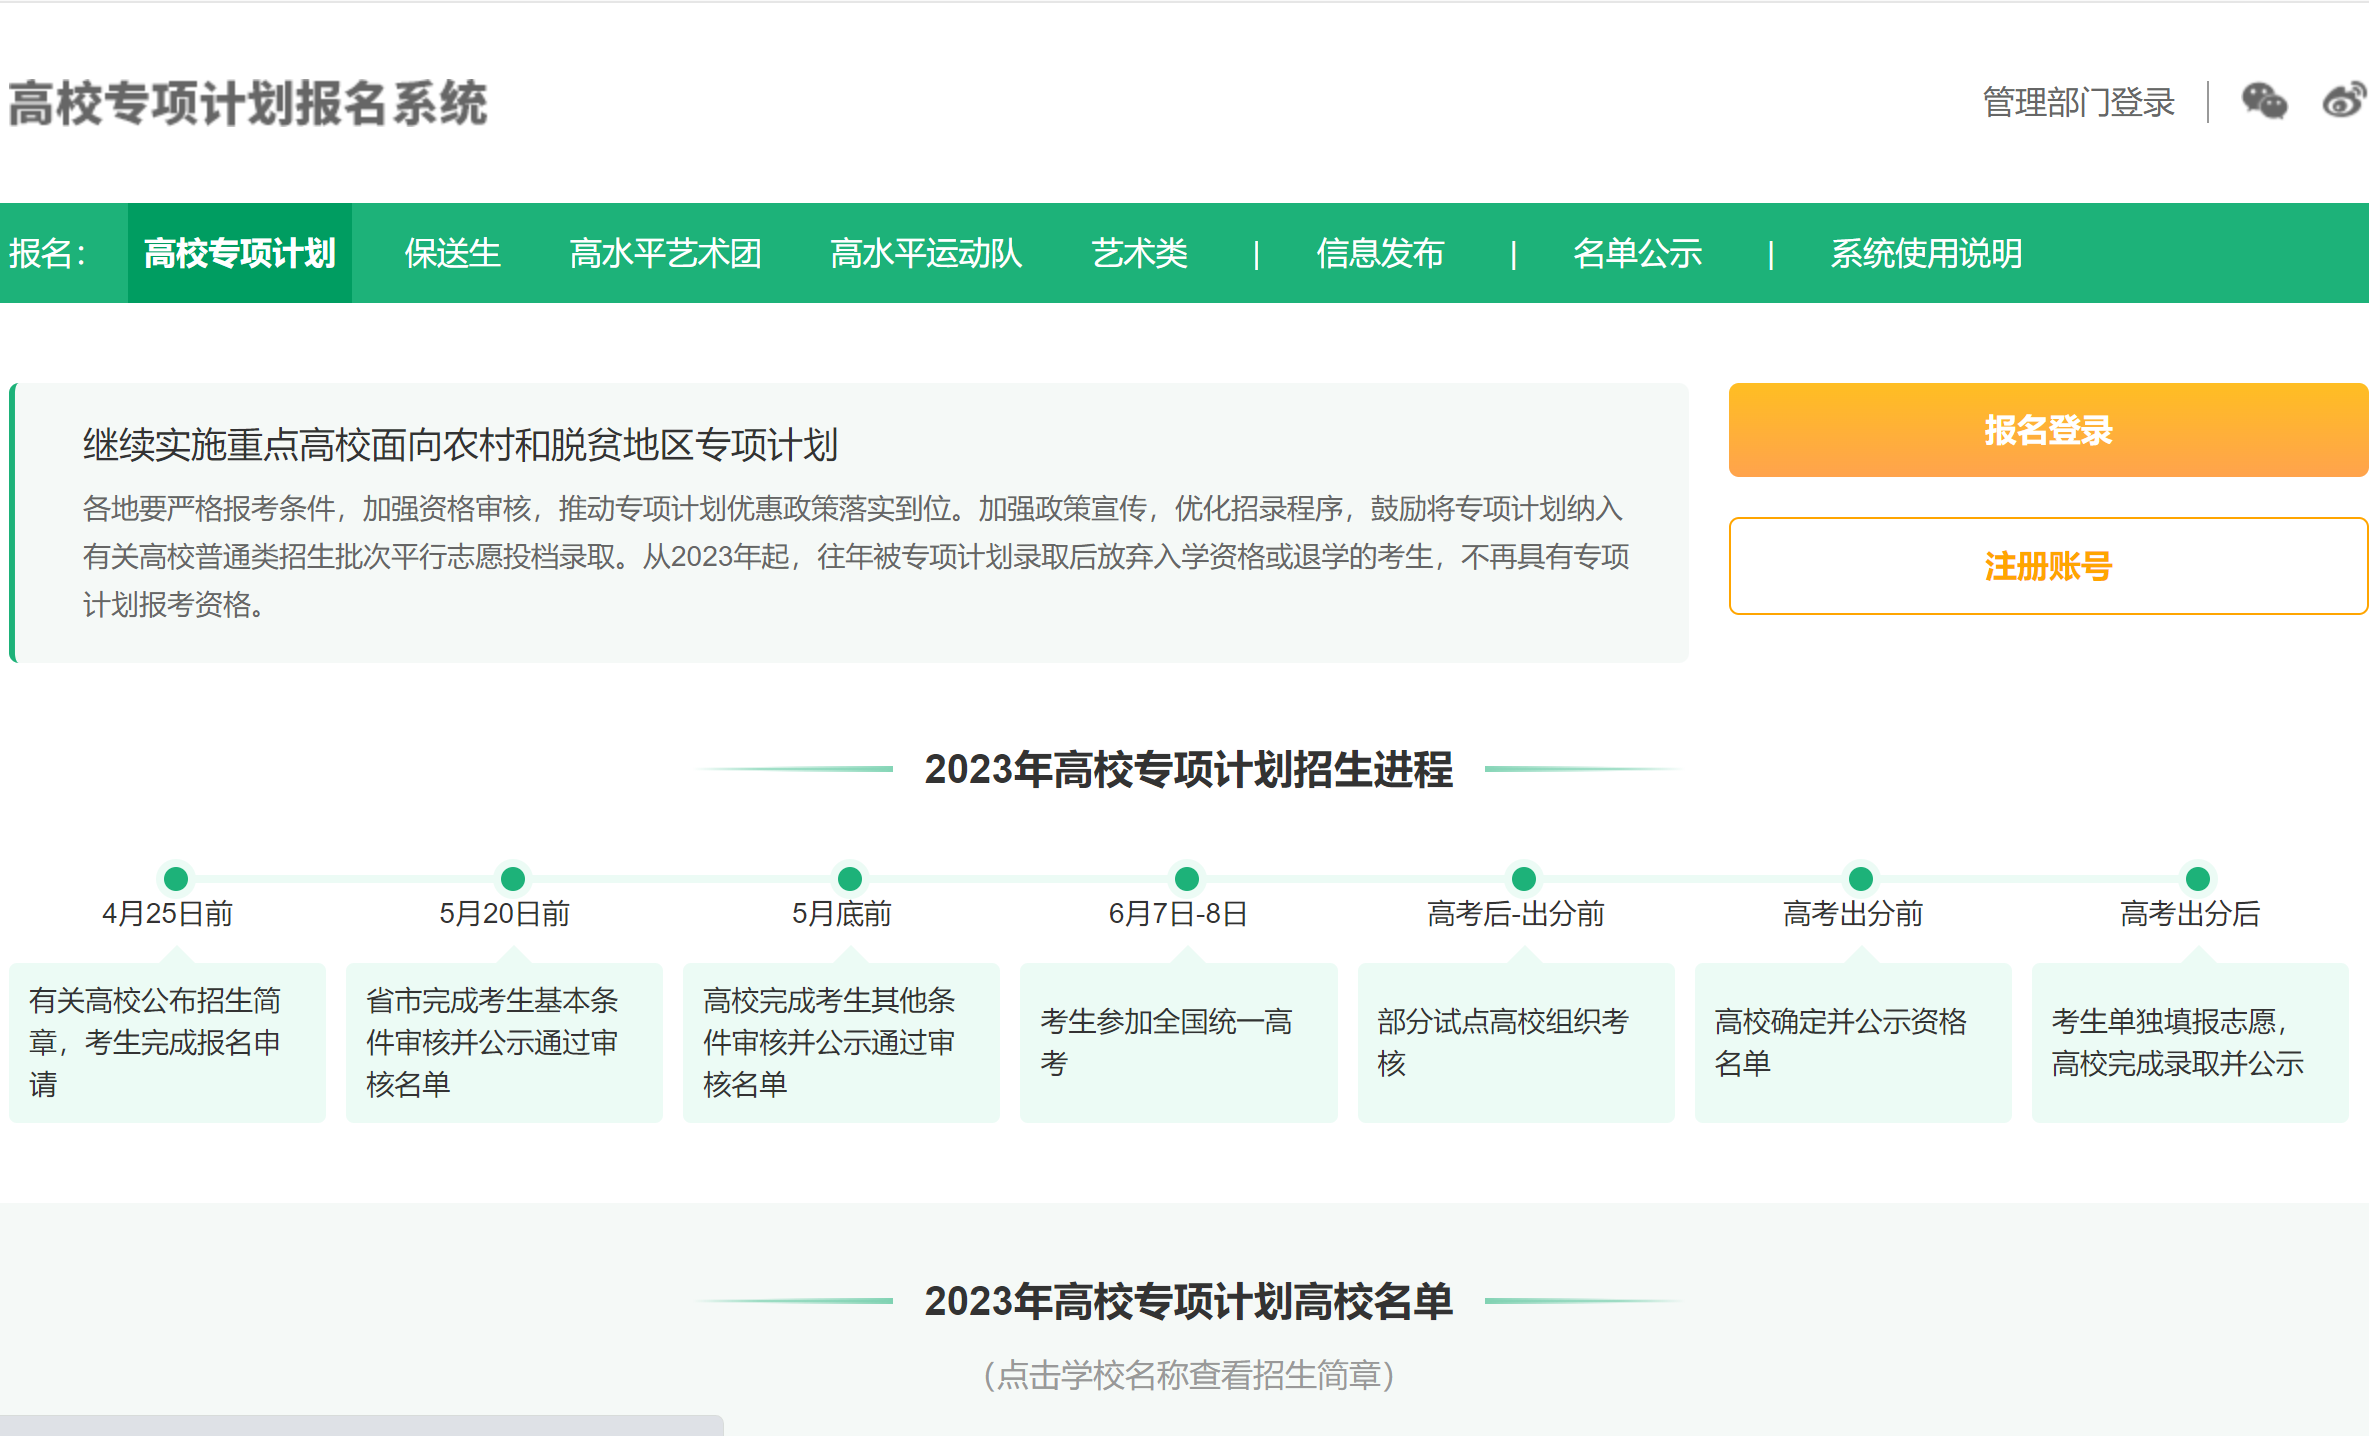 2023北京科技大学高校专项计划报名时间及报名入口